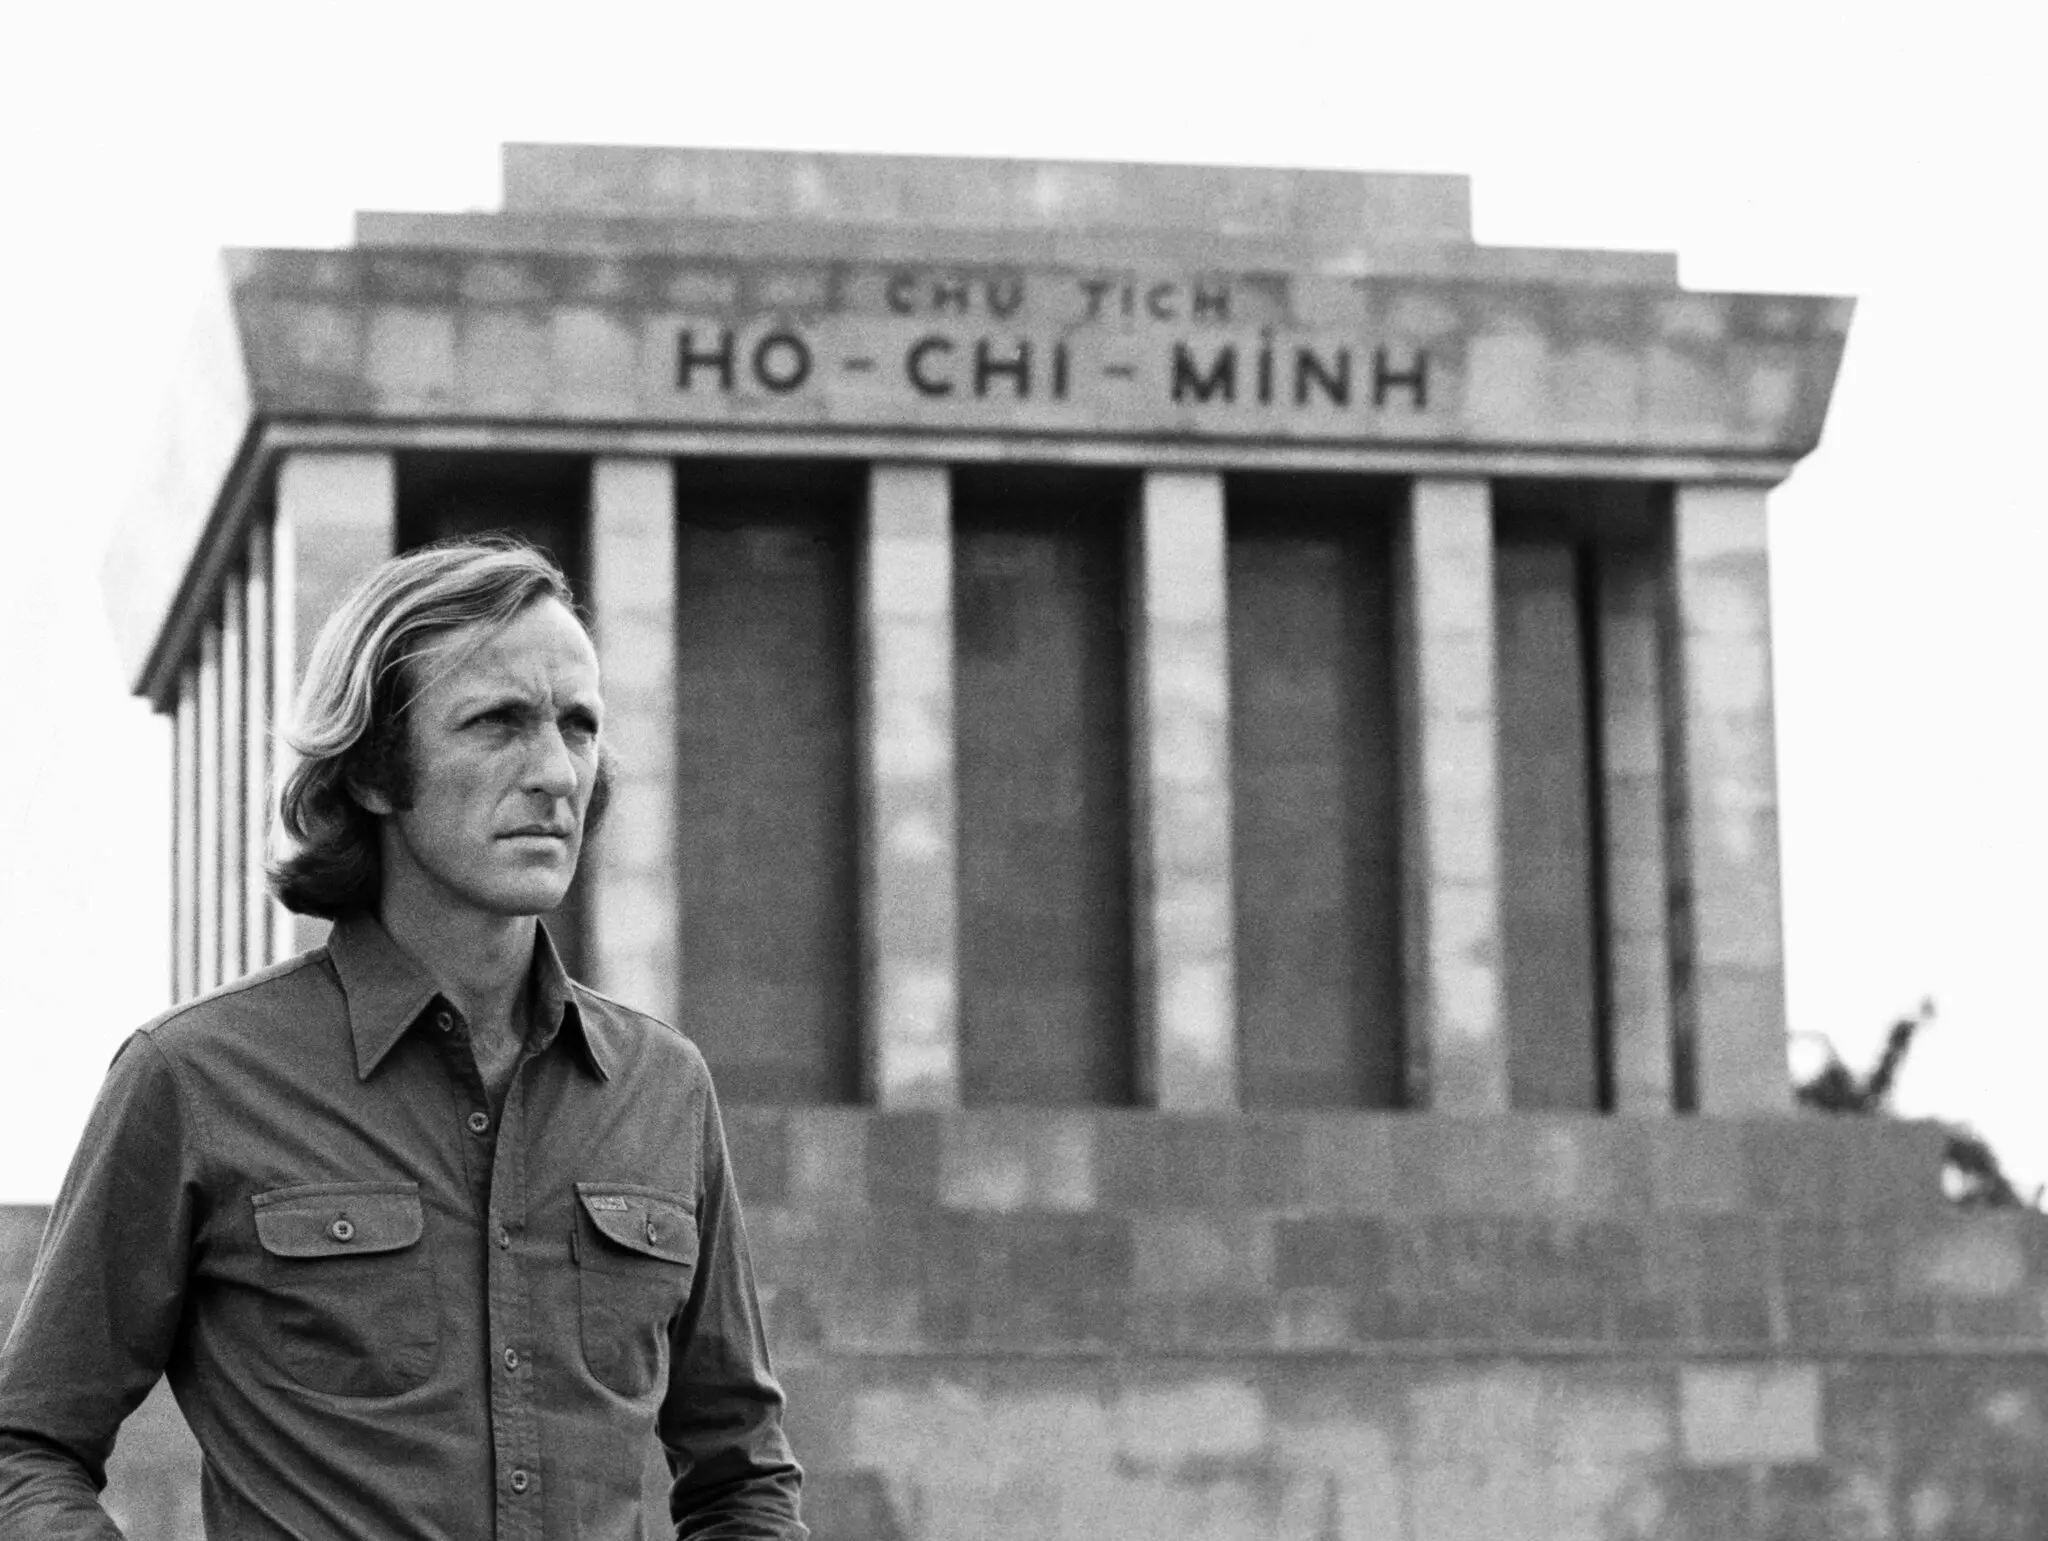 John Pilger em 1979 no Mausoléu de Ho Chi Minh em Hanói, Vietnã. Seus muitos filmes feitos no Sudeste Asiático foram elogiados, mas ele também foi acusado de subordinar o jornalismo à defesa de direitos. (Crédito da fotografia: Coleção Hulton-Deutsch/Corbis, via Getty Images)